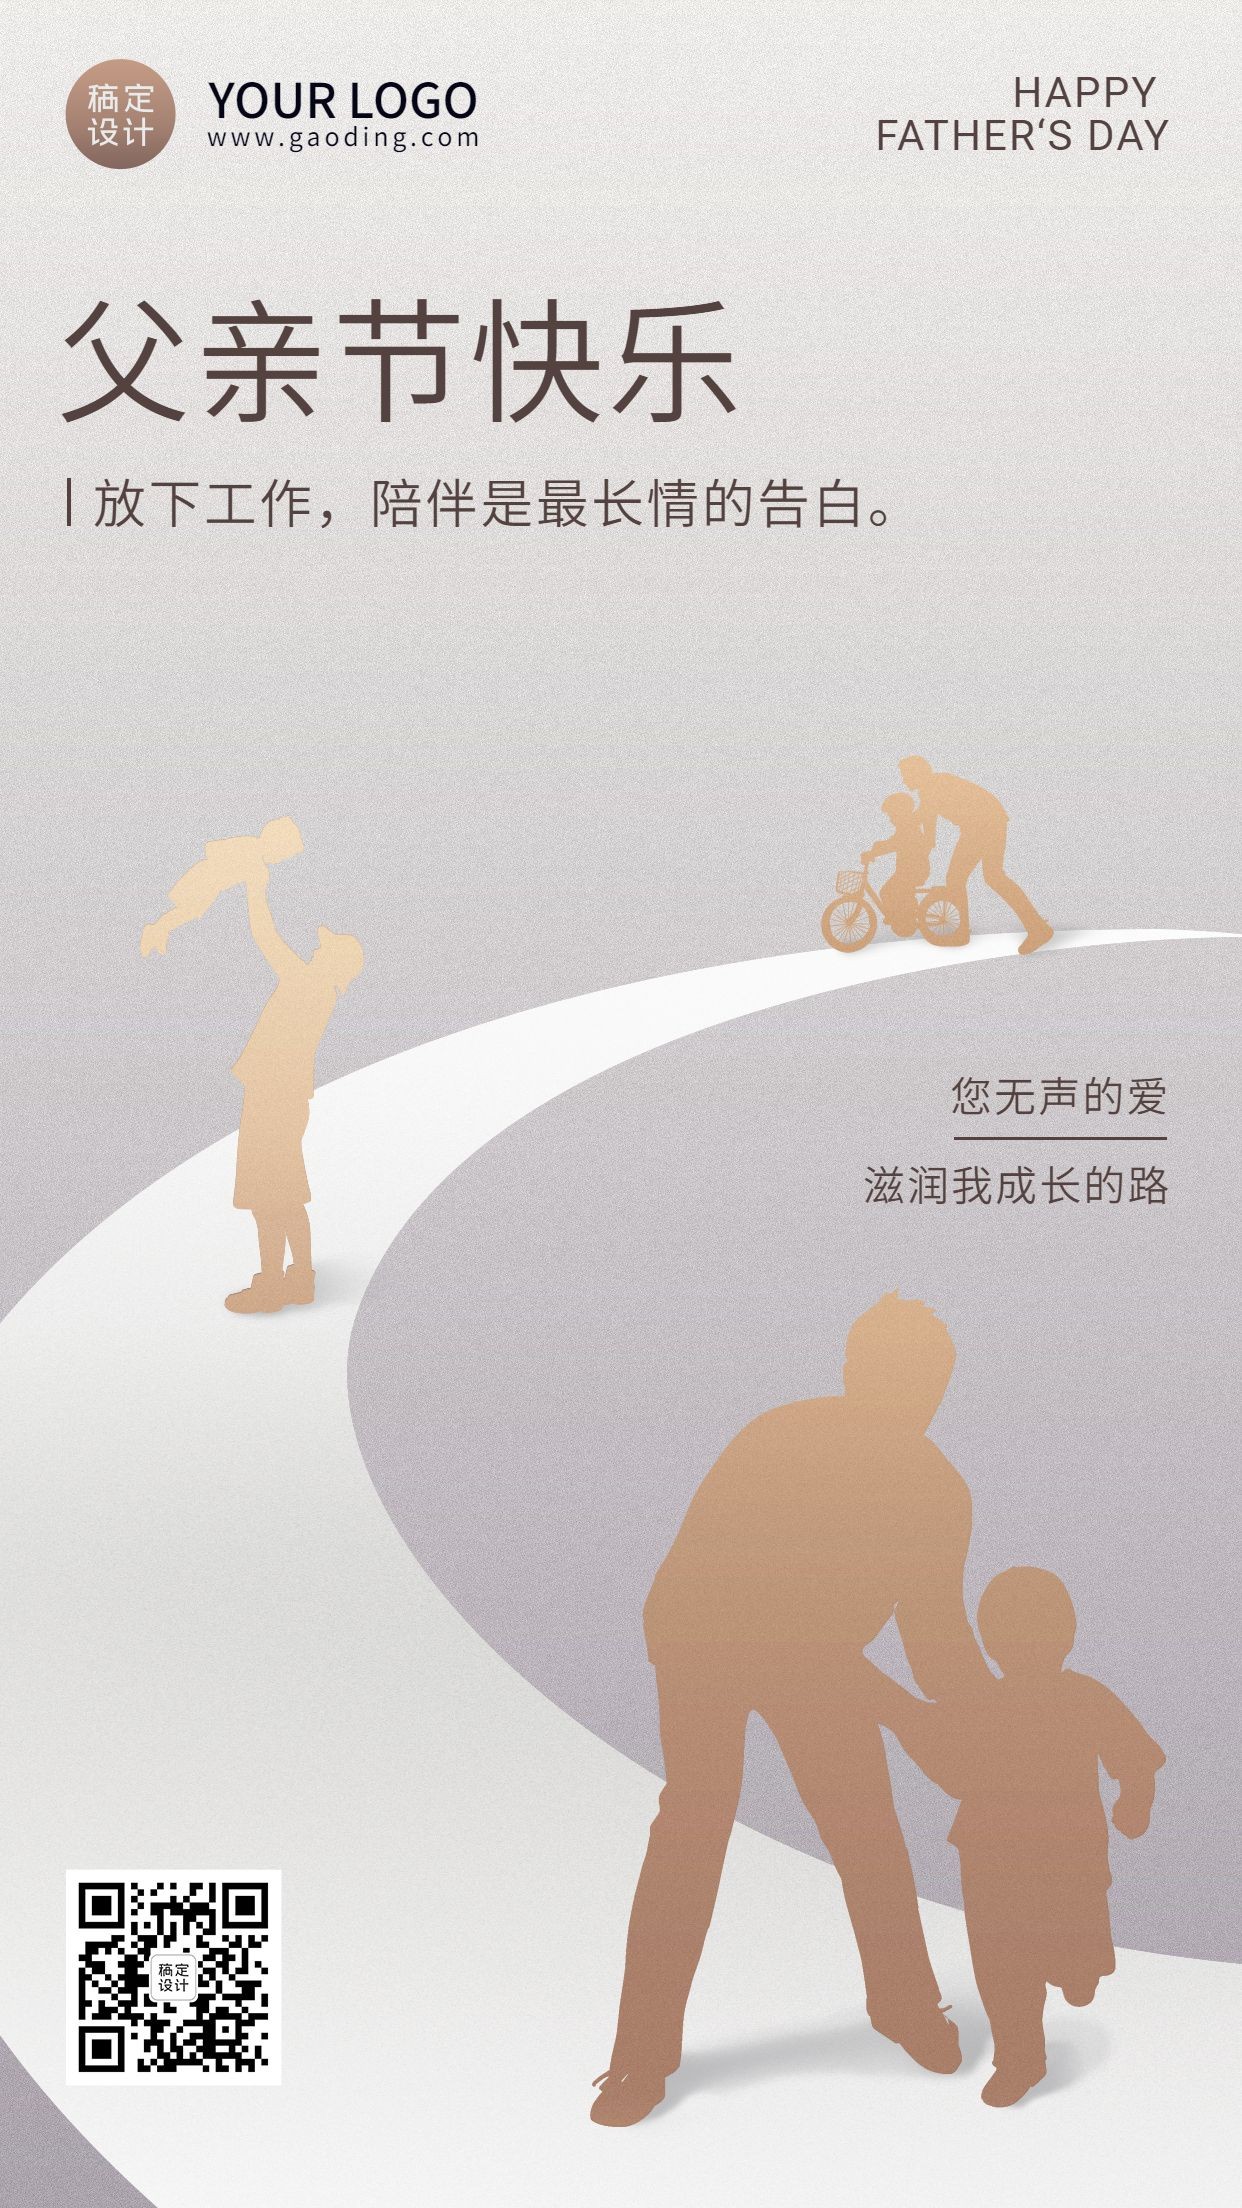 父亲节企业节日祝福扁平手机海报